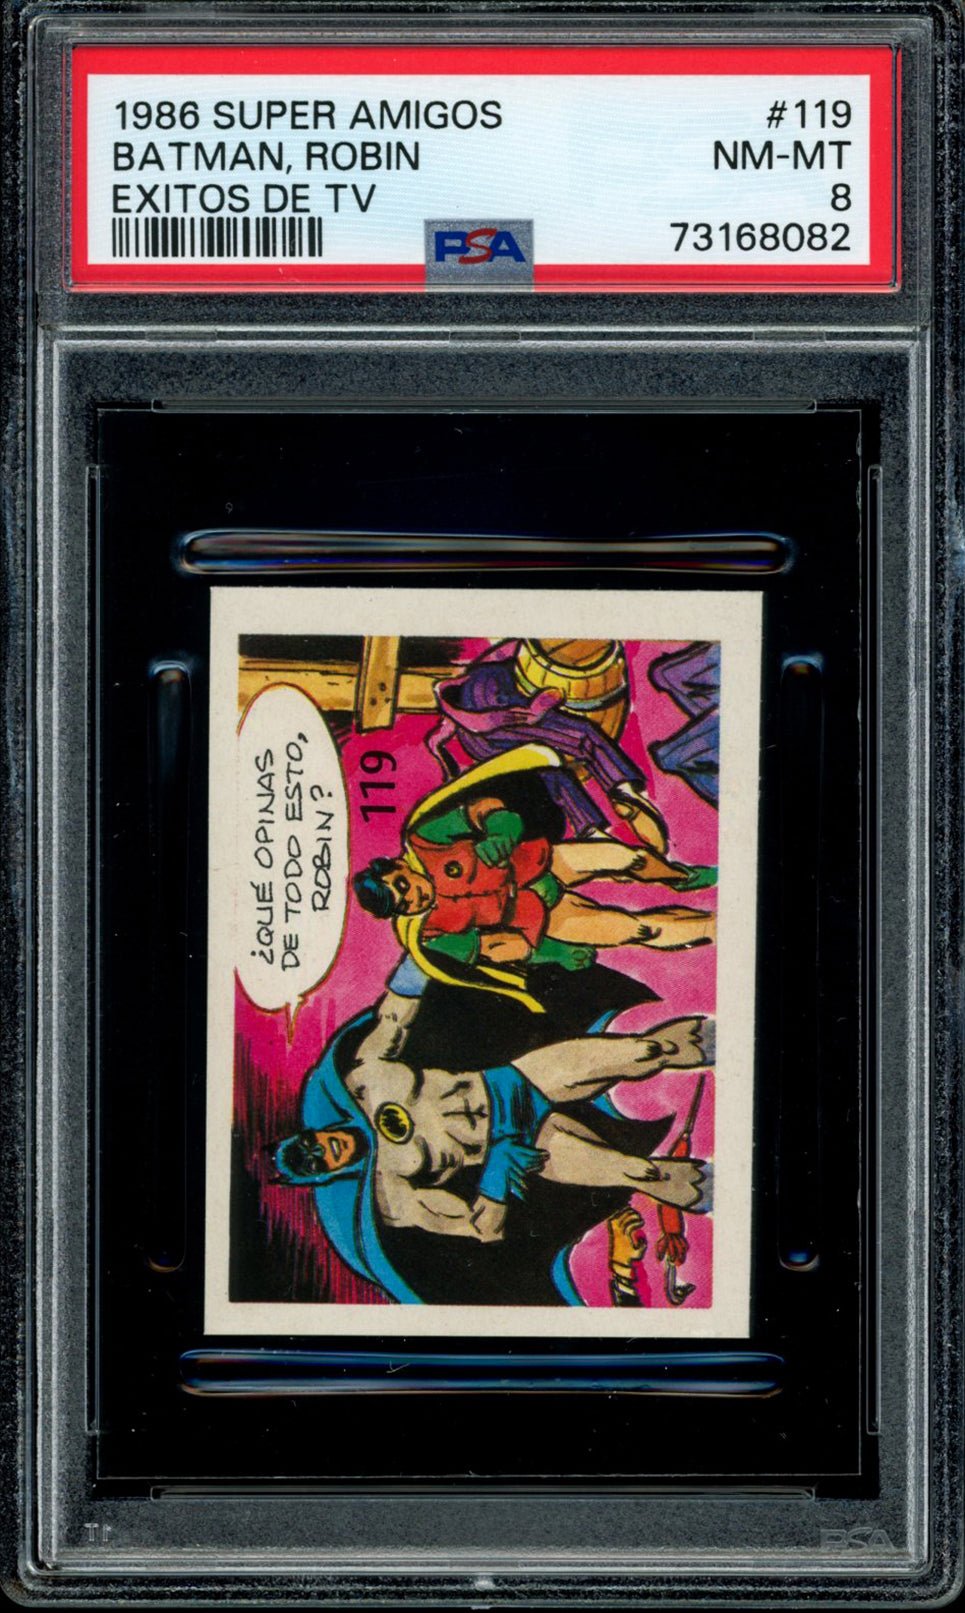 BATMAN & ROBIN PSA 8 1986 Reyauca Super Amigos Exitos de TV #119 DC Comics Base Graded Cards - Hobby Gems